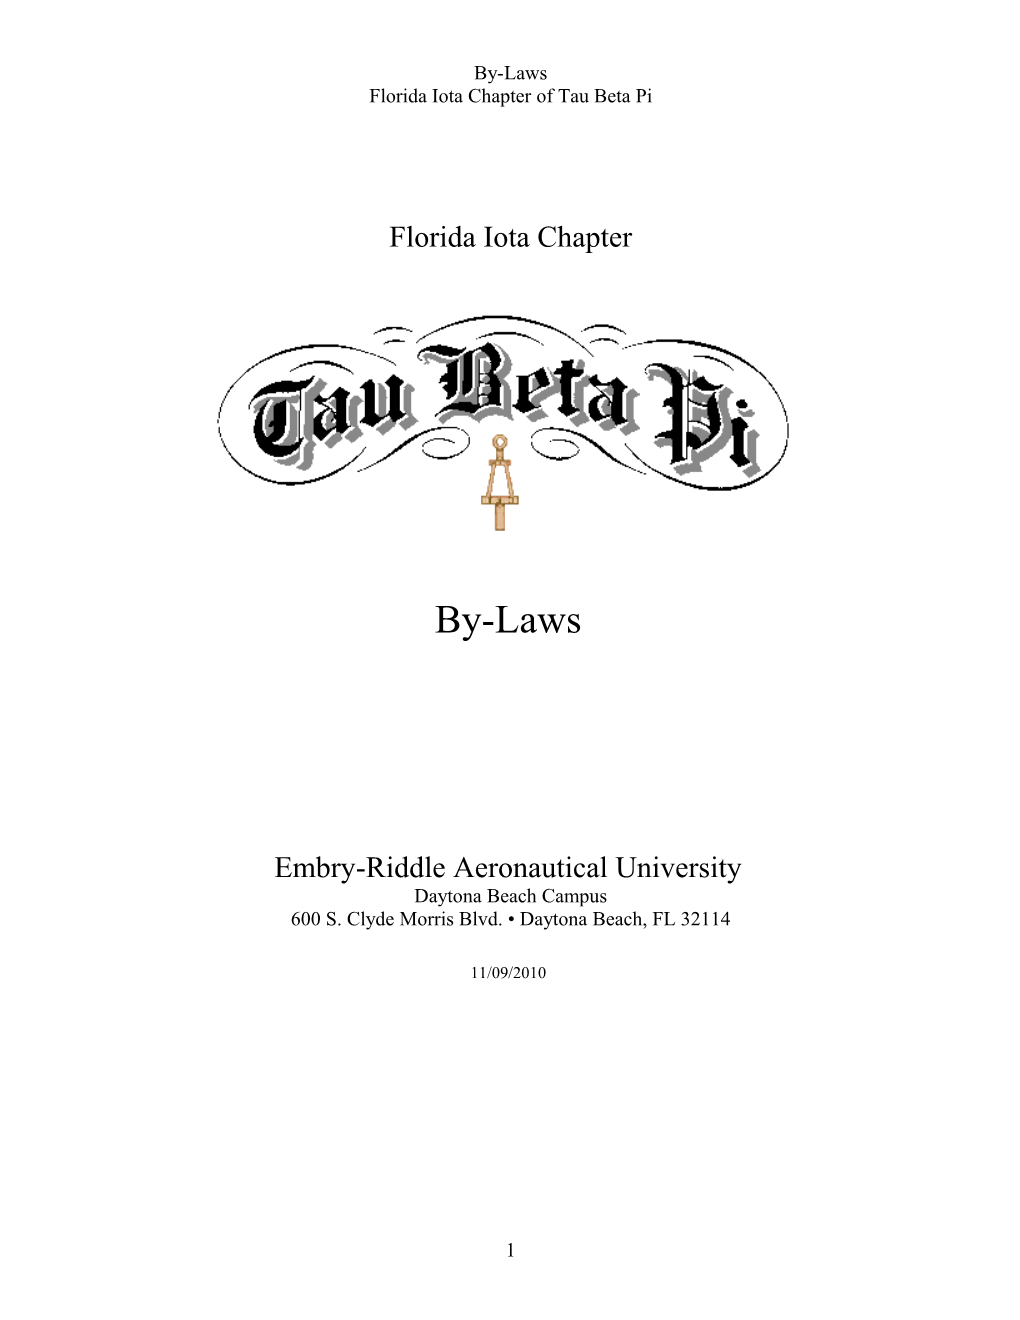 Florida Iota Chapter of Tau Beta Pi